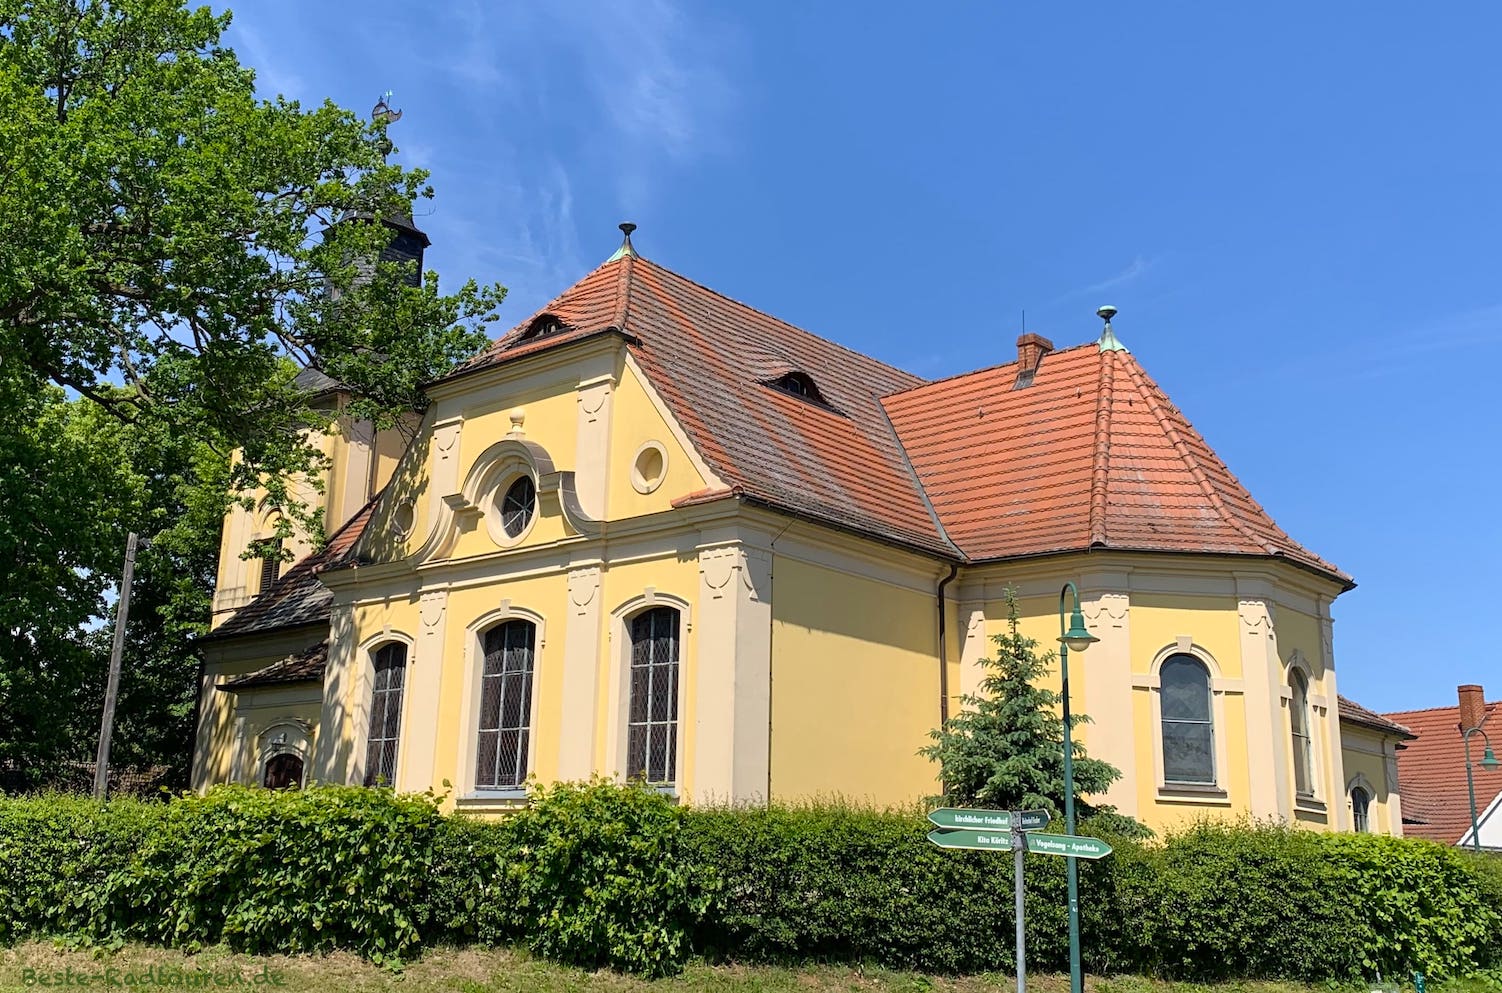 Dorfkirche Köritz, Ortsteil von Neustadt Dosse